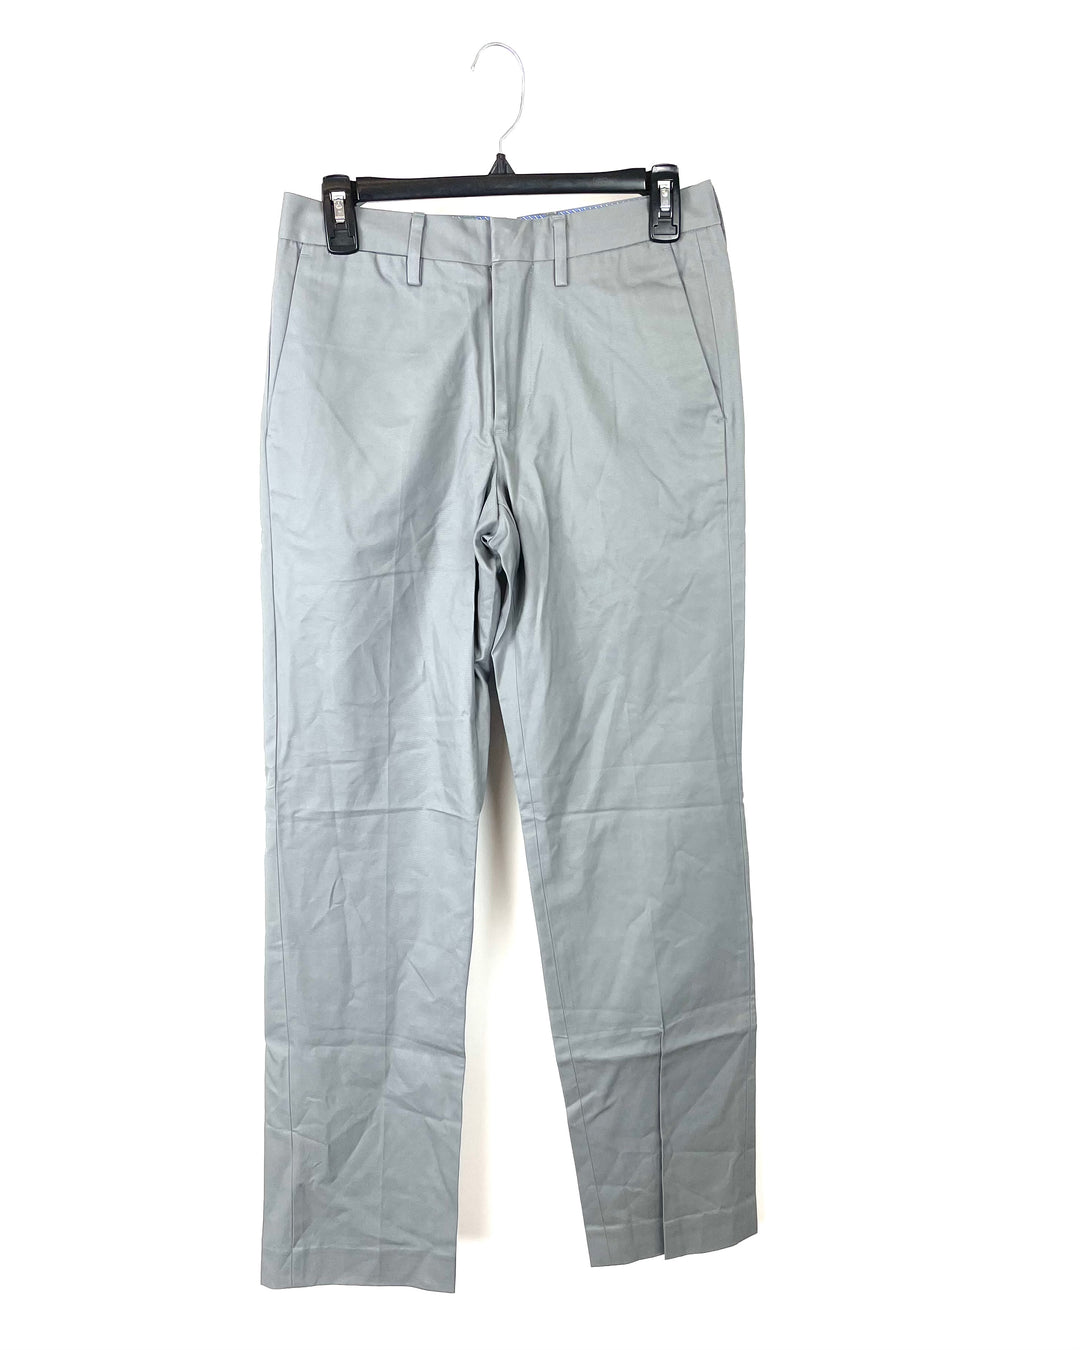 MENS Matte Grey Straight Leg Dress Pants - Size 28/32